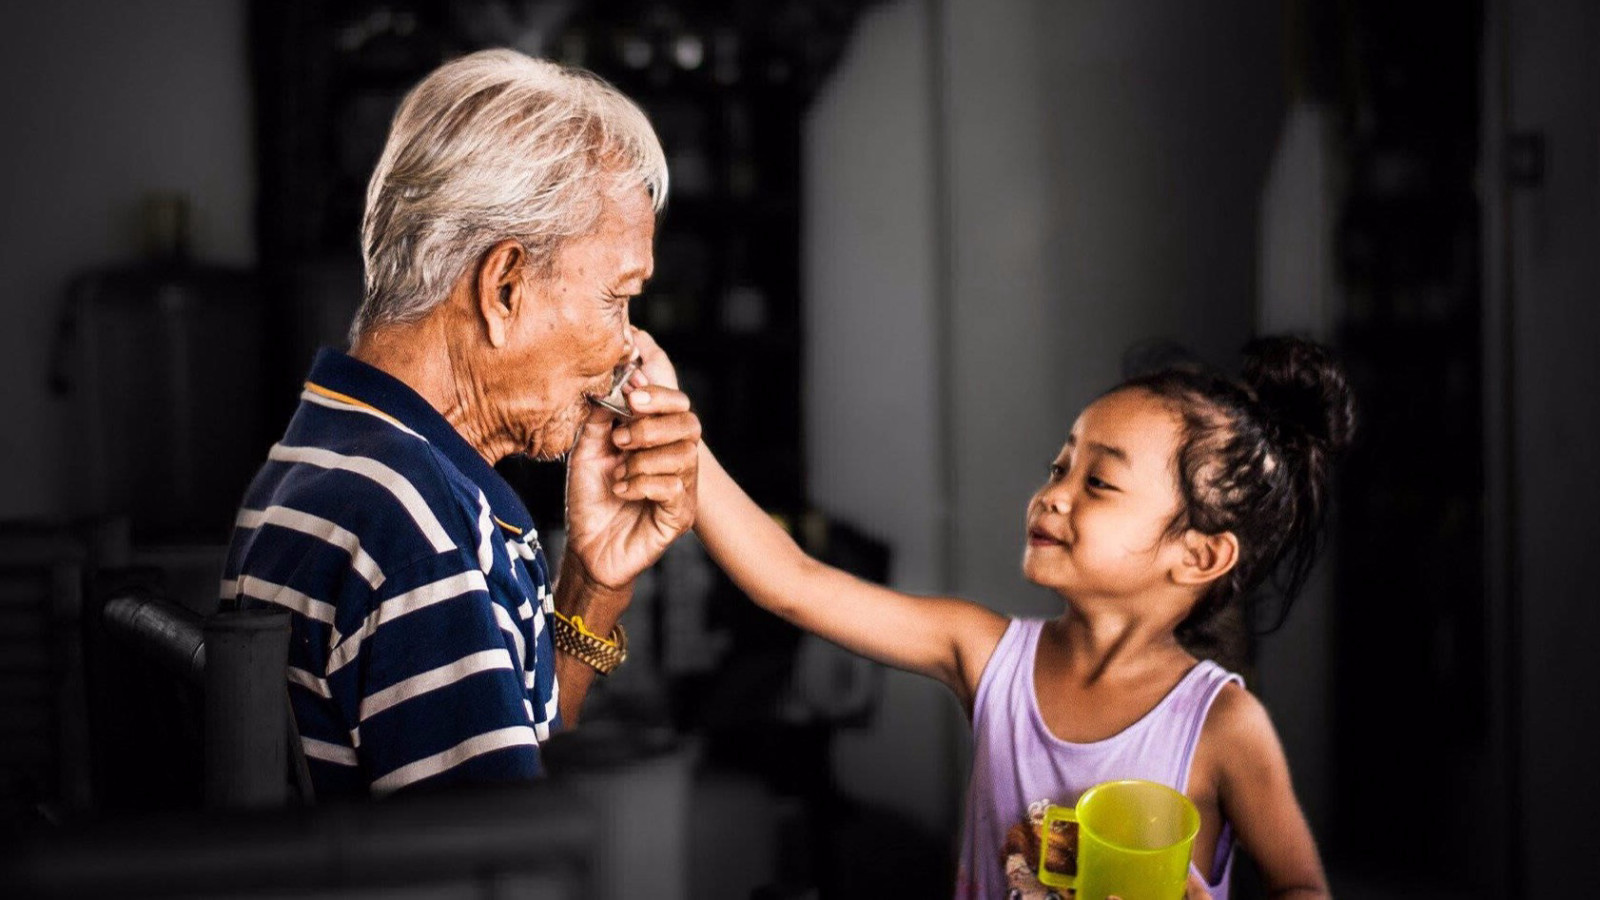 Hãy cùng xem những hình ảnh đầy cảm xúc về ông bà nuôi cháu. Đây là một câu chuyện cảm động về tình yêu thương, sự hi sinh và sự tử tế của những người già tuyệt vời.